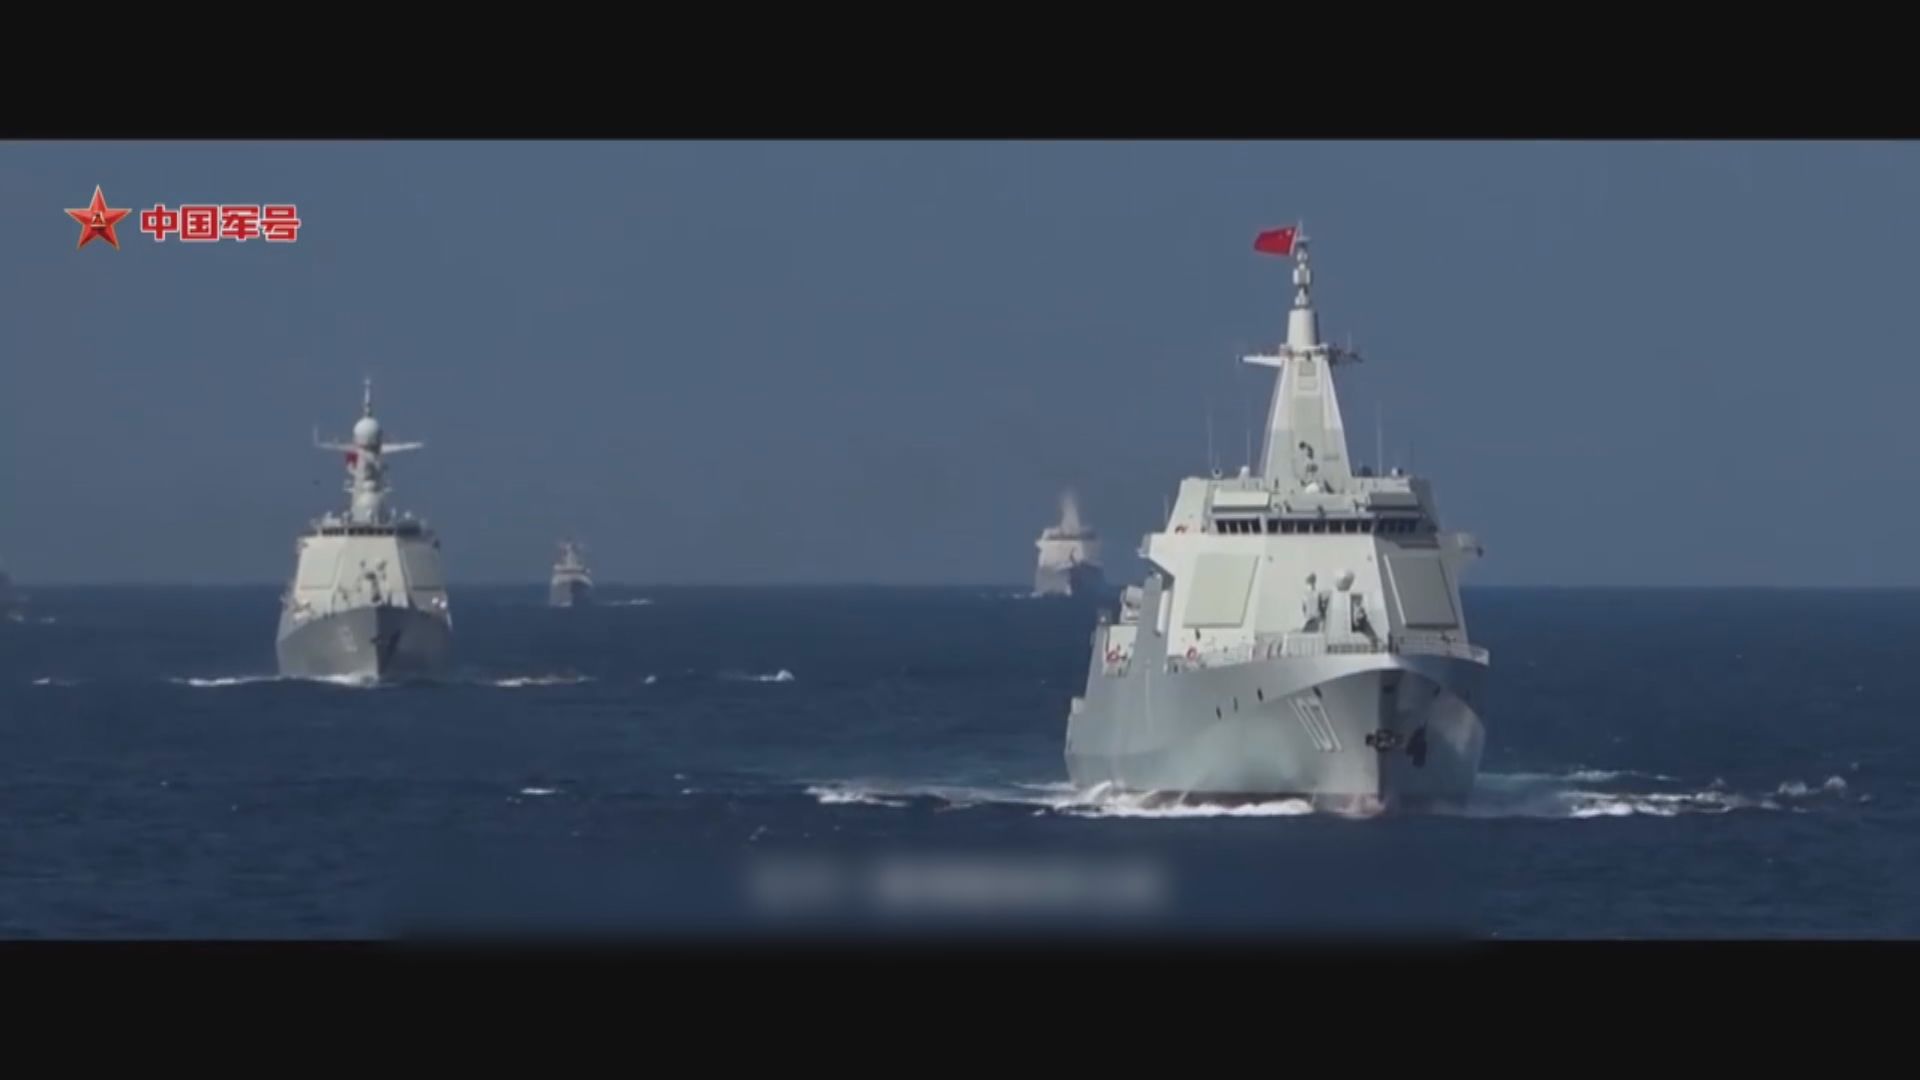 解放軍宣傳片出現巨浪導彈潛射畫面 並首次完整公開山東艦航母編隊陣容